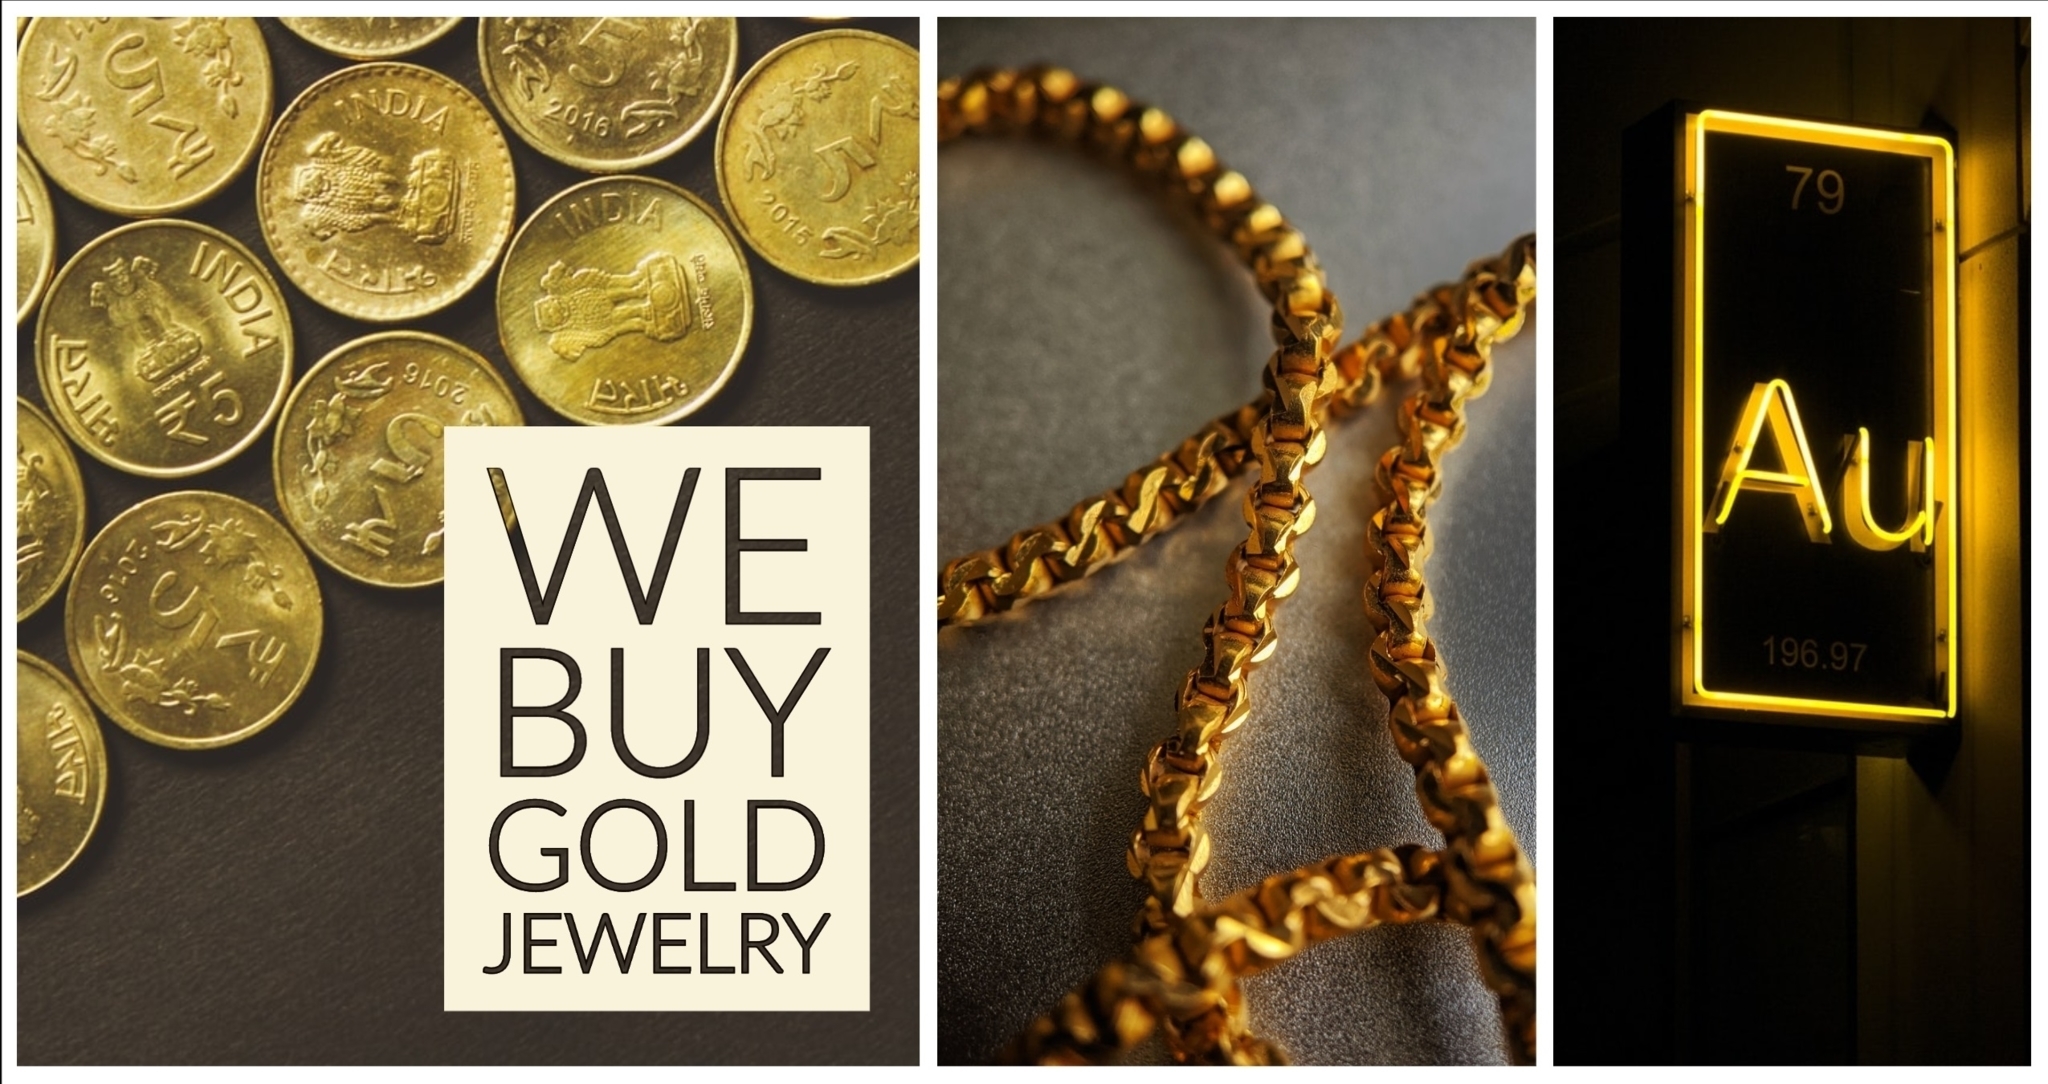 A&M Gold Buyers - Achat de bijoux